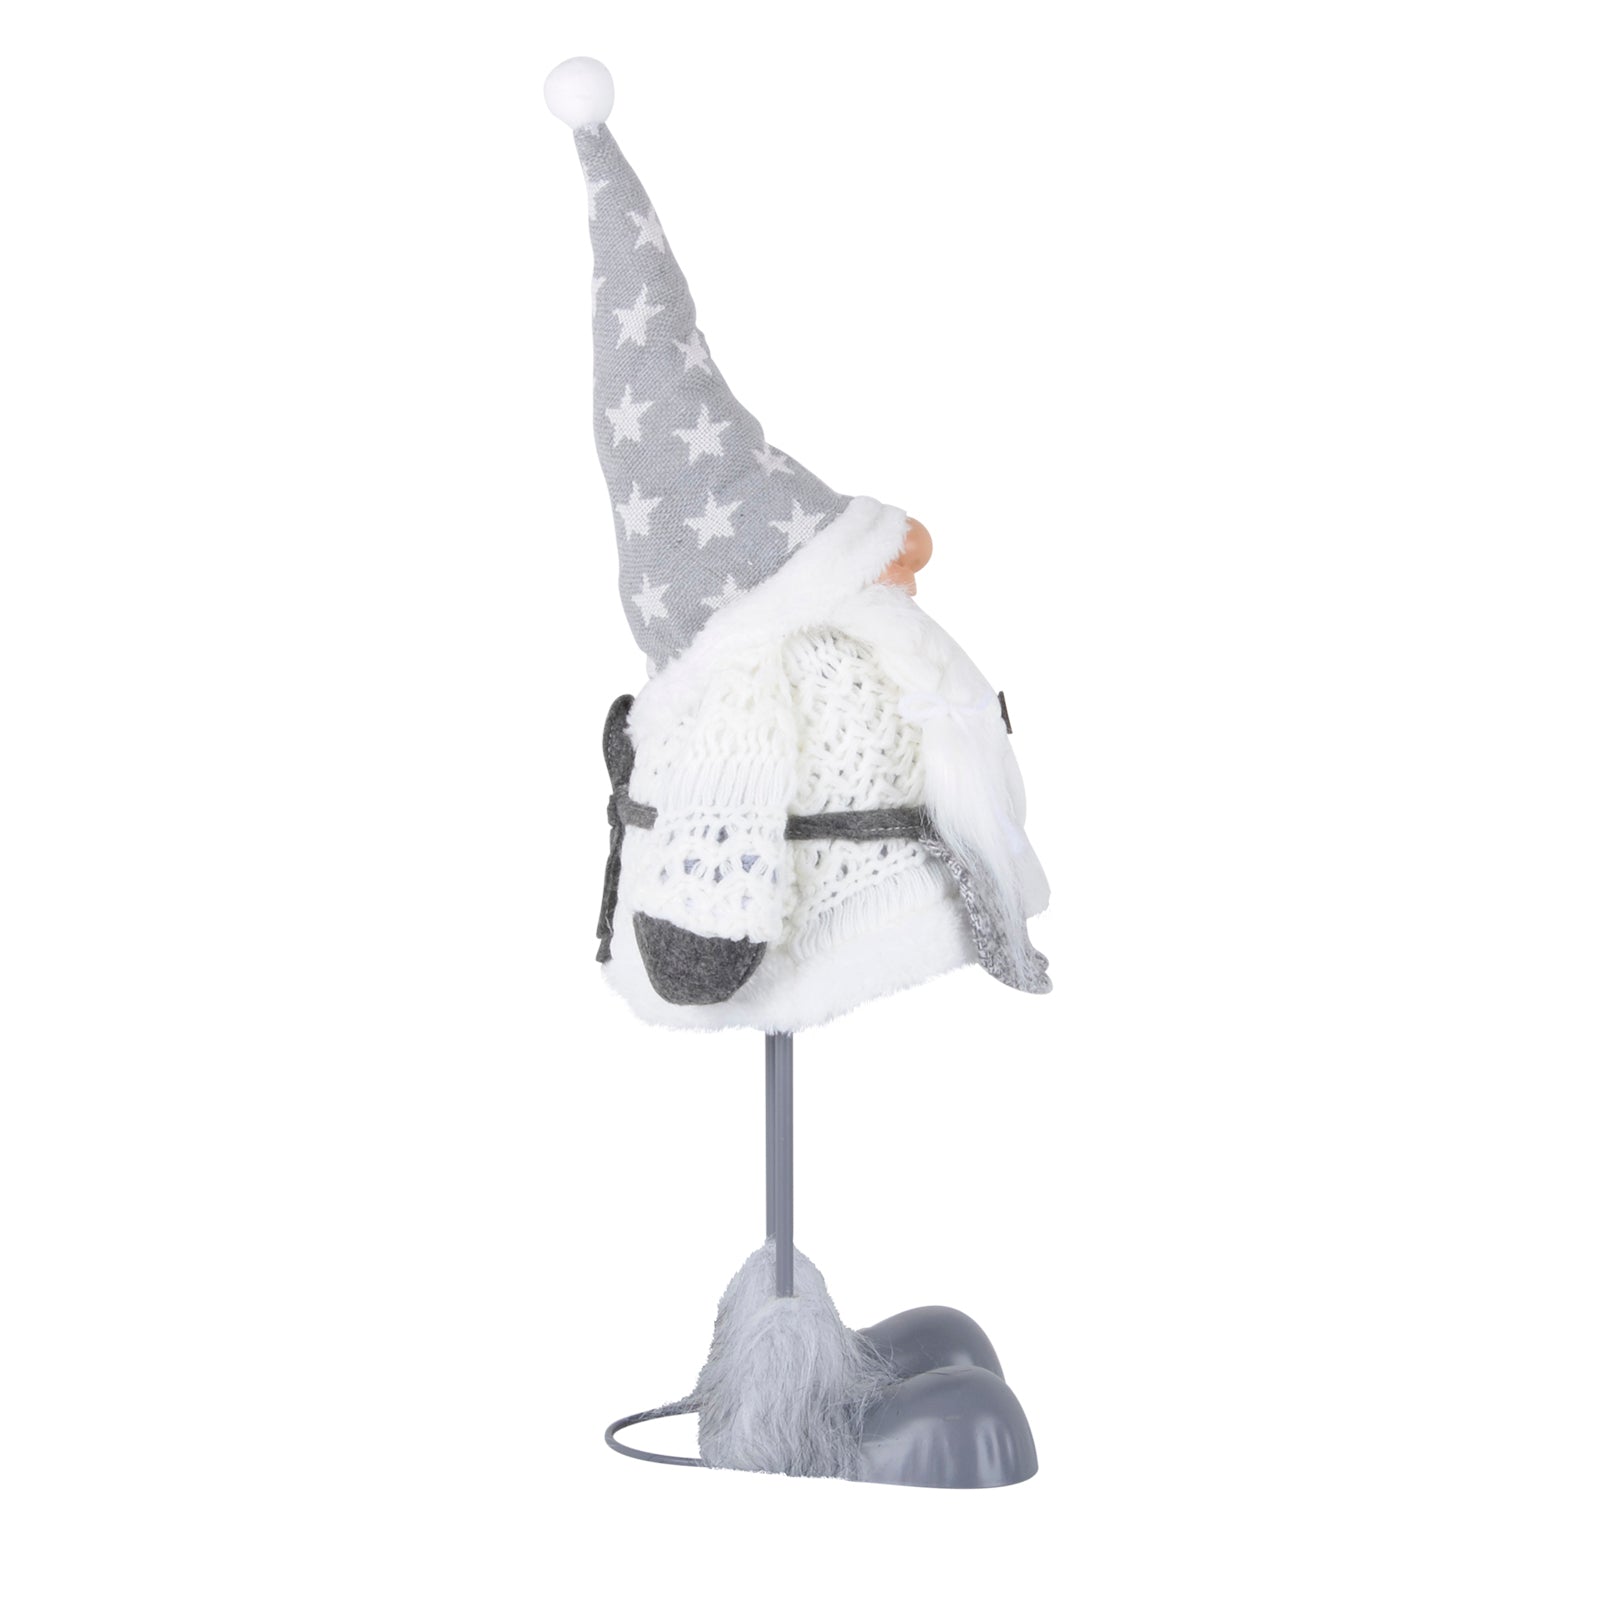 Mr Crimbo Dancing Christmas Gonk Figure Novelty Decoration - MrCrimbo.co.uk -XS4385 - 53cm -christmas decor